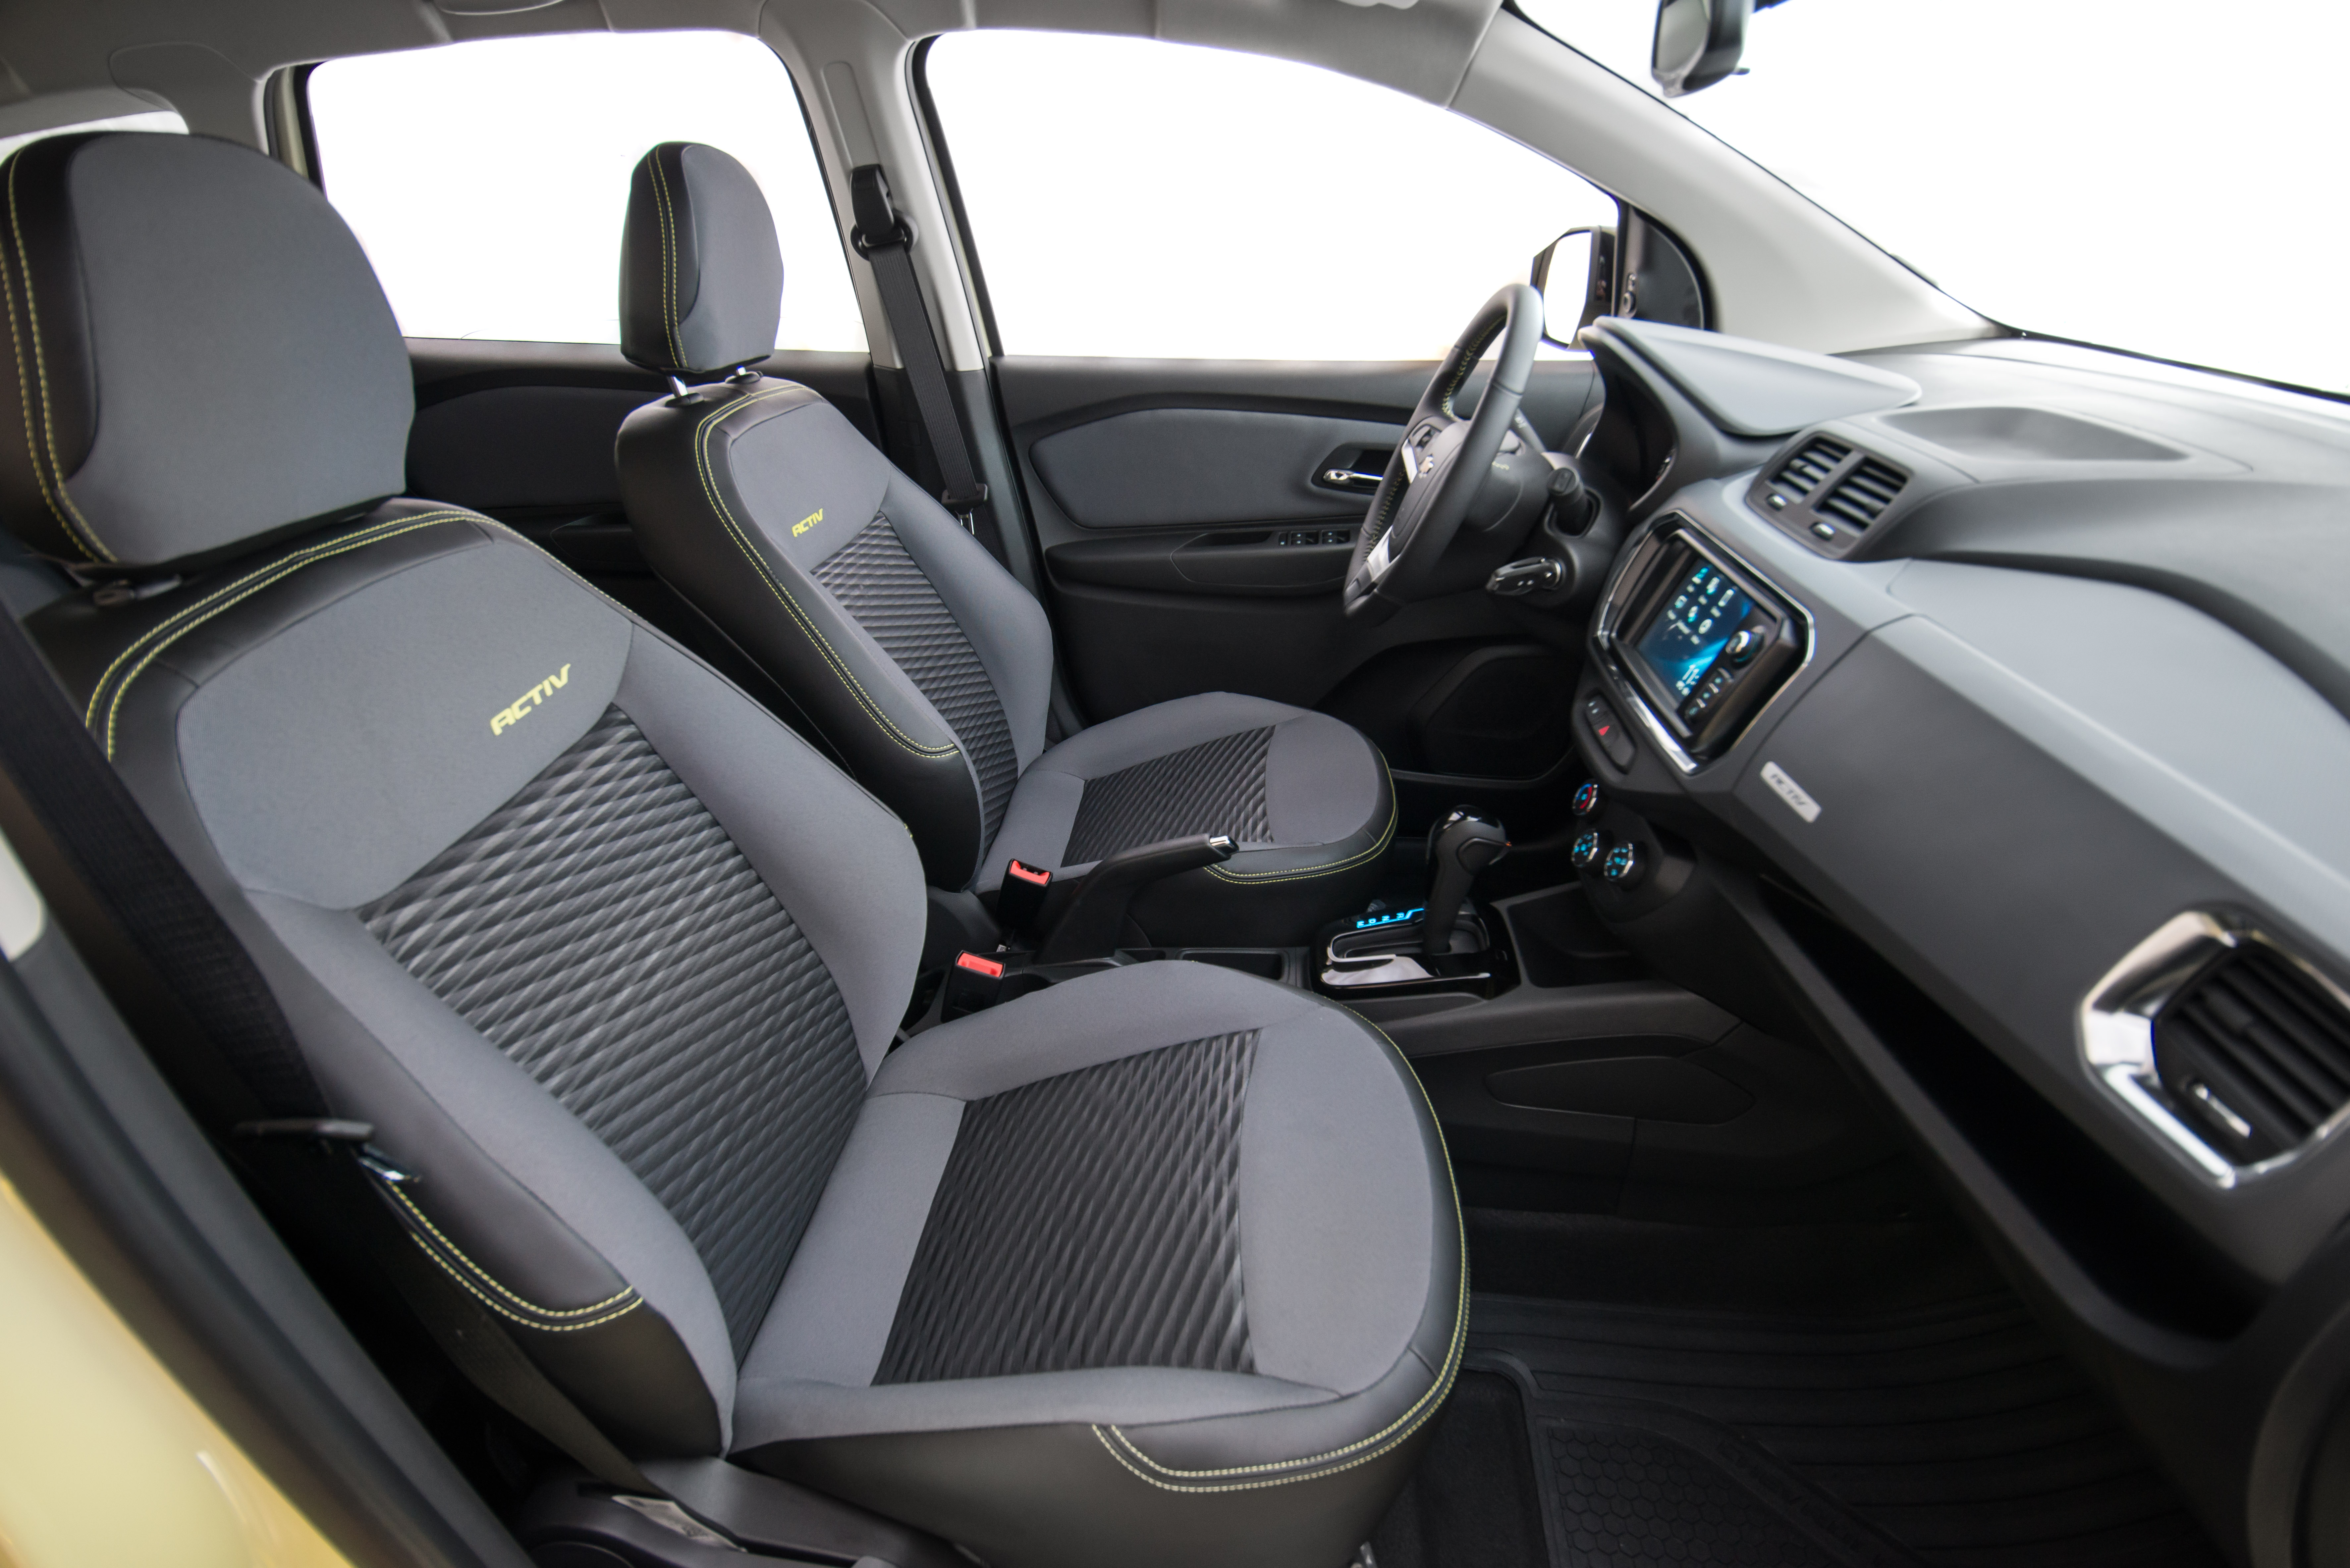  Chevrolet Spin Activ 2019 ganhou bancos redesenhados, com novos espumas e revestimento com costuras em amarelo